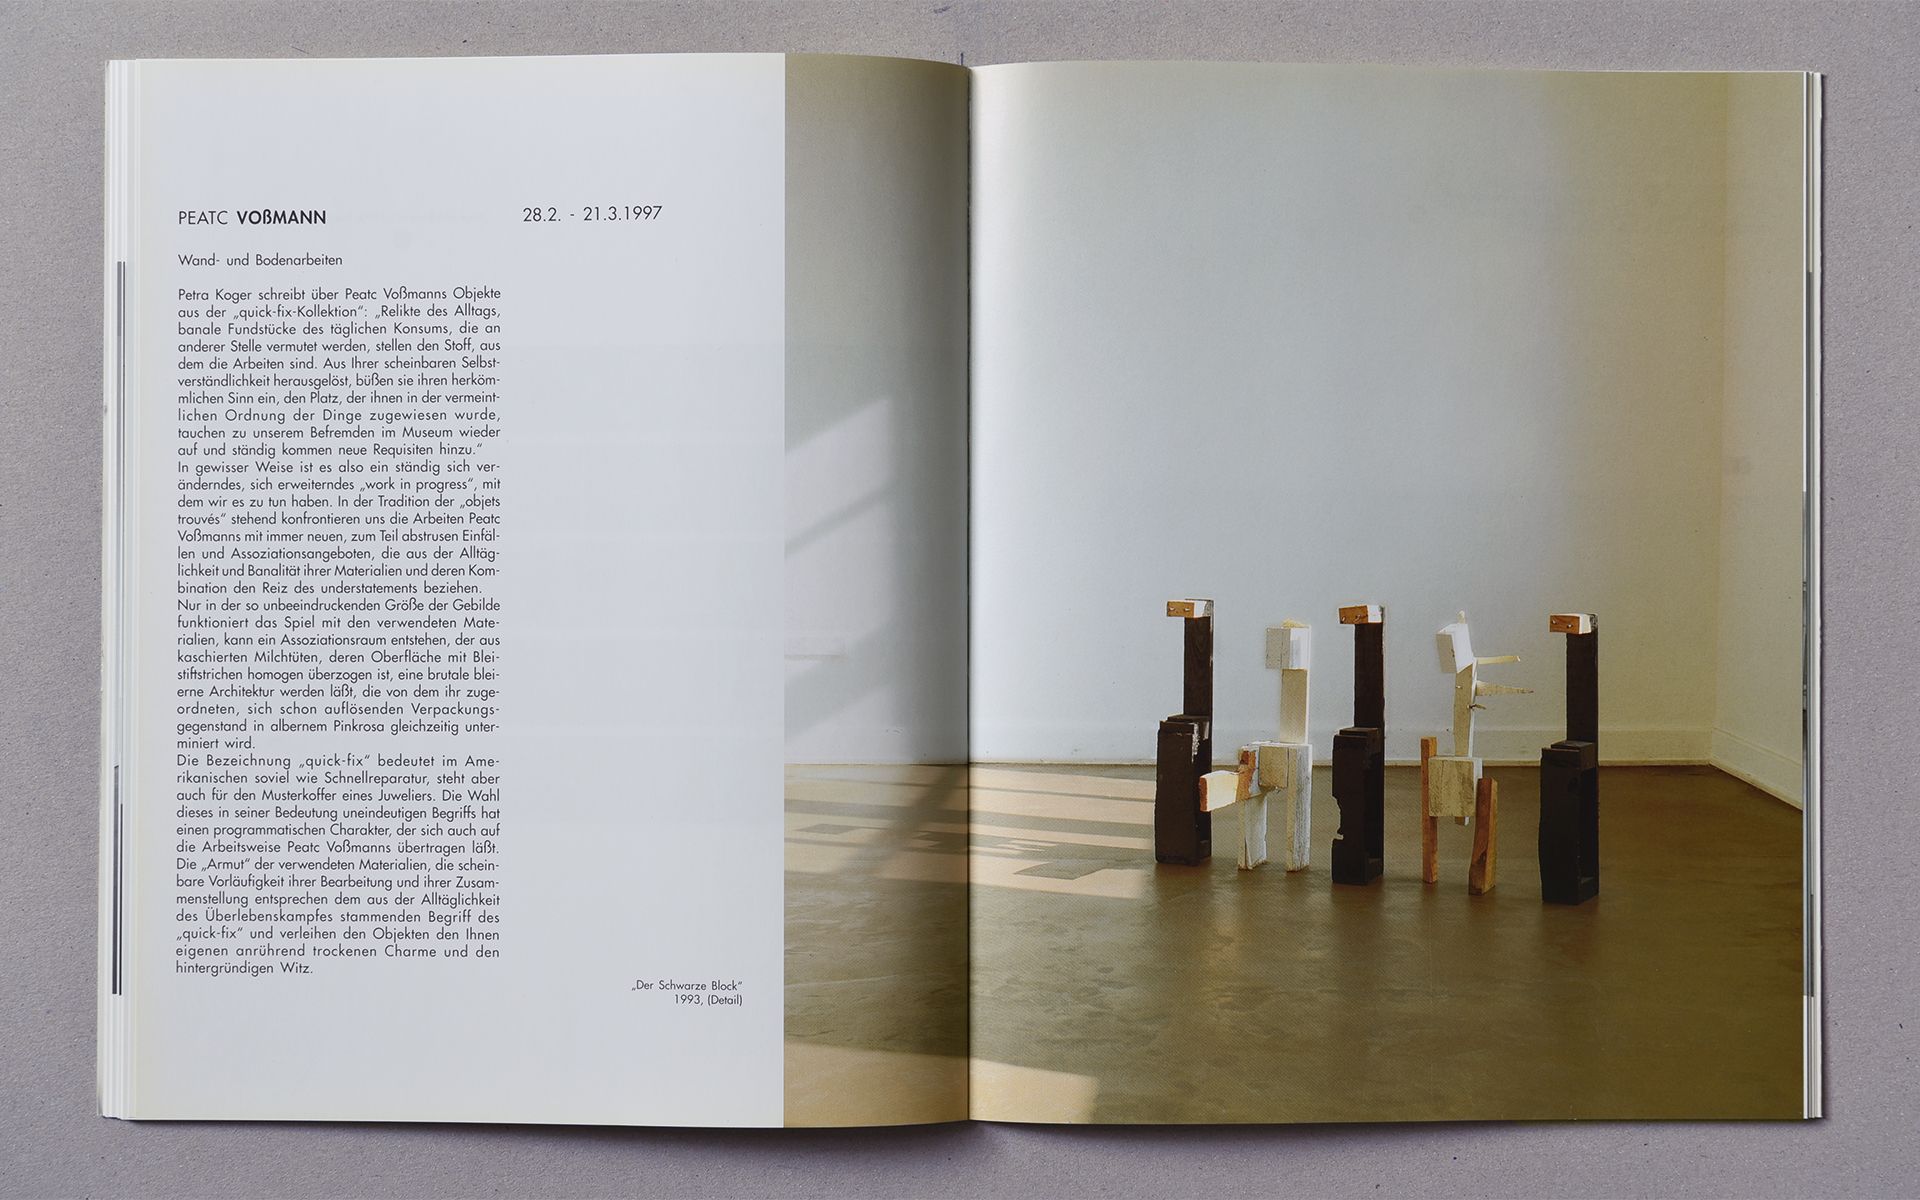 Katalog Galerie im Kunsthaus Essen 1996/97